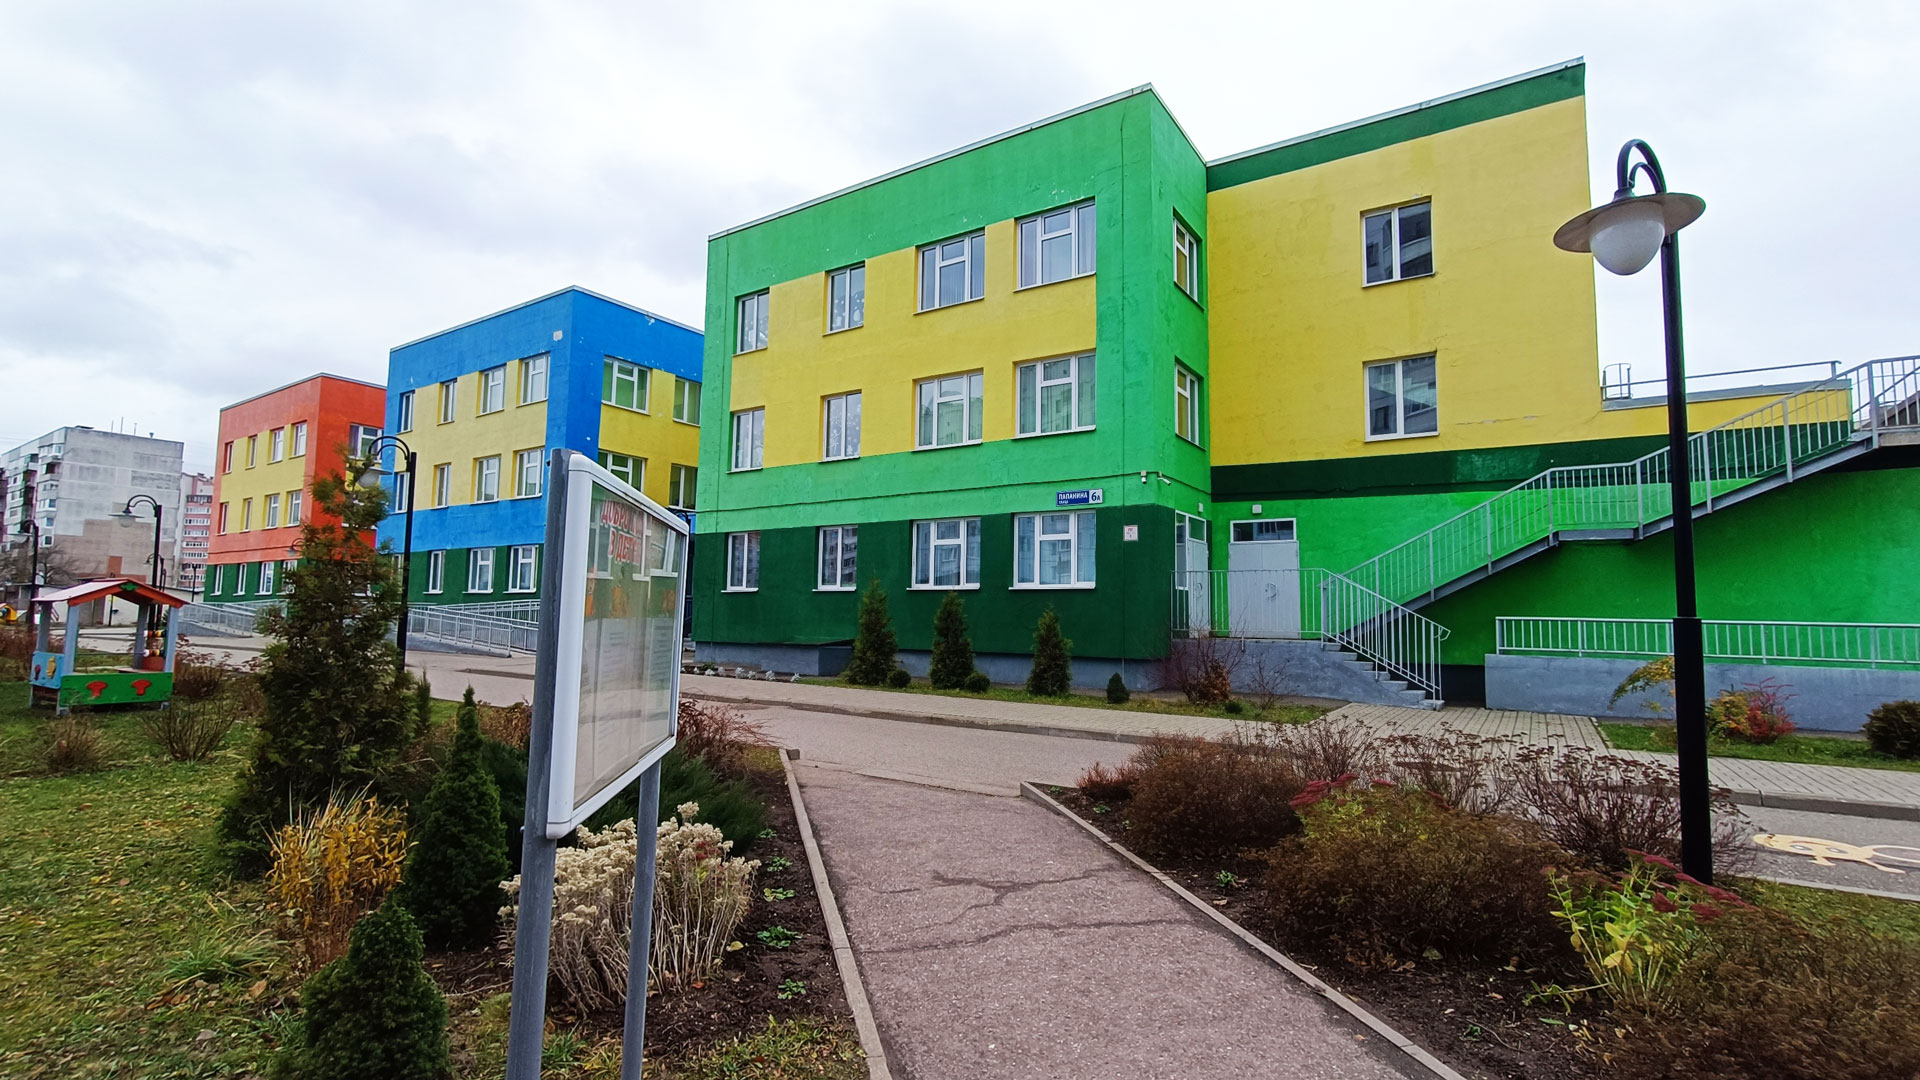 Детский сад 148 Ярославль: общий вид здания и территории.